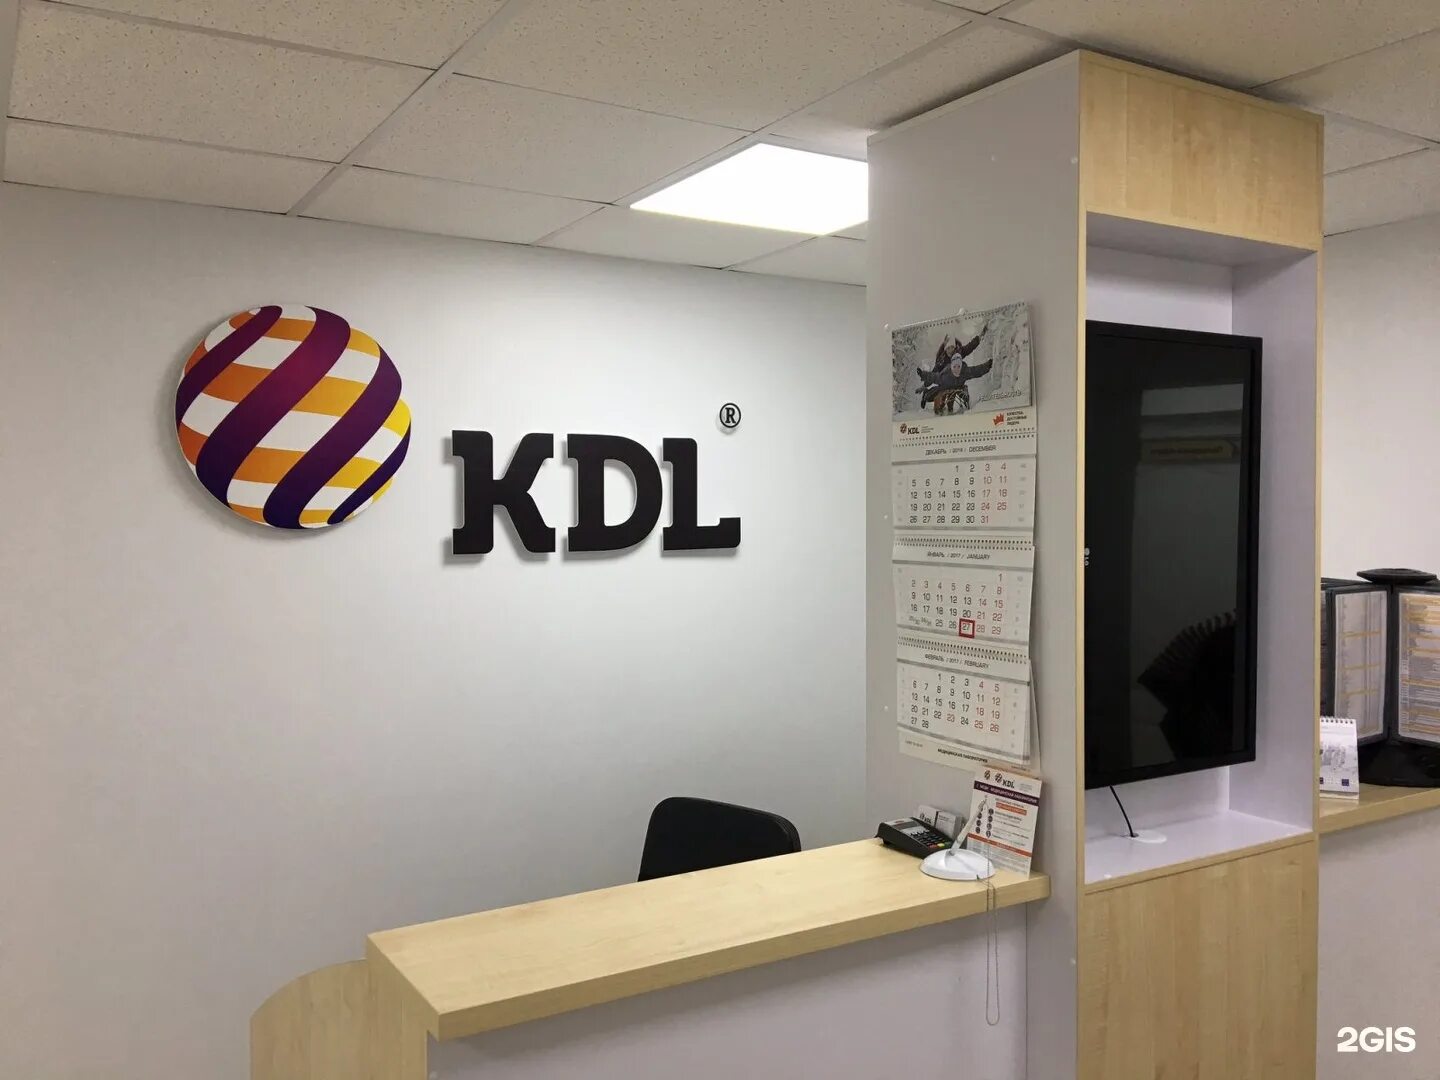 КДЛ лаборатория Омск. KDL логотип. Эмблема КДЛ лаборатории. KDL В Омске.